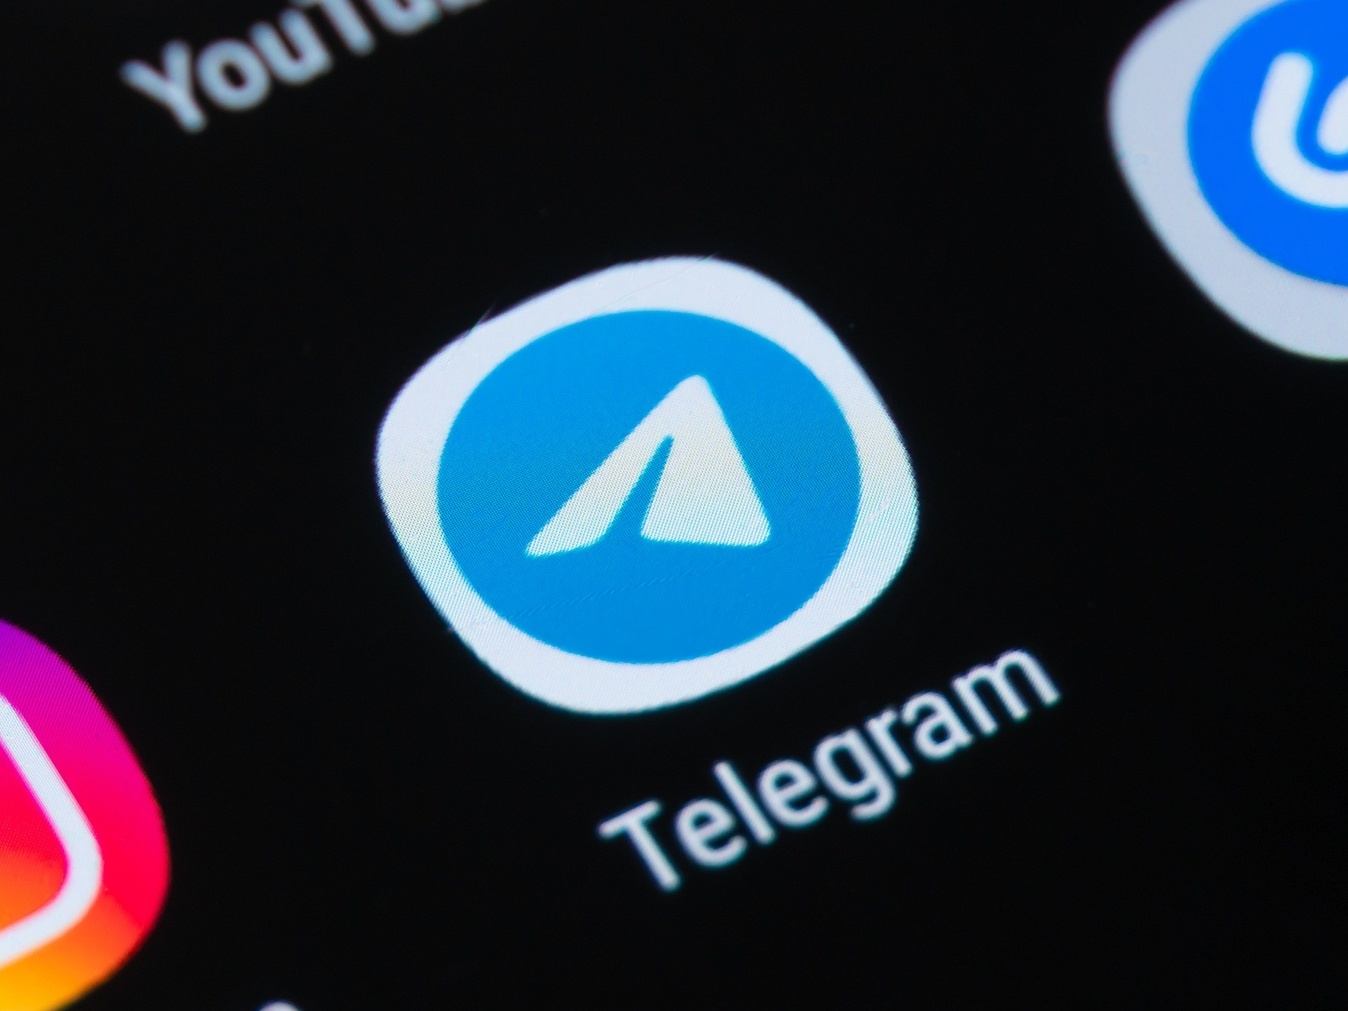 Telegram Premium é lançado com preço de R$ 24,90 e promete